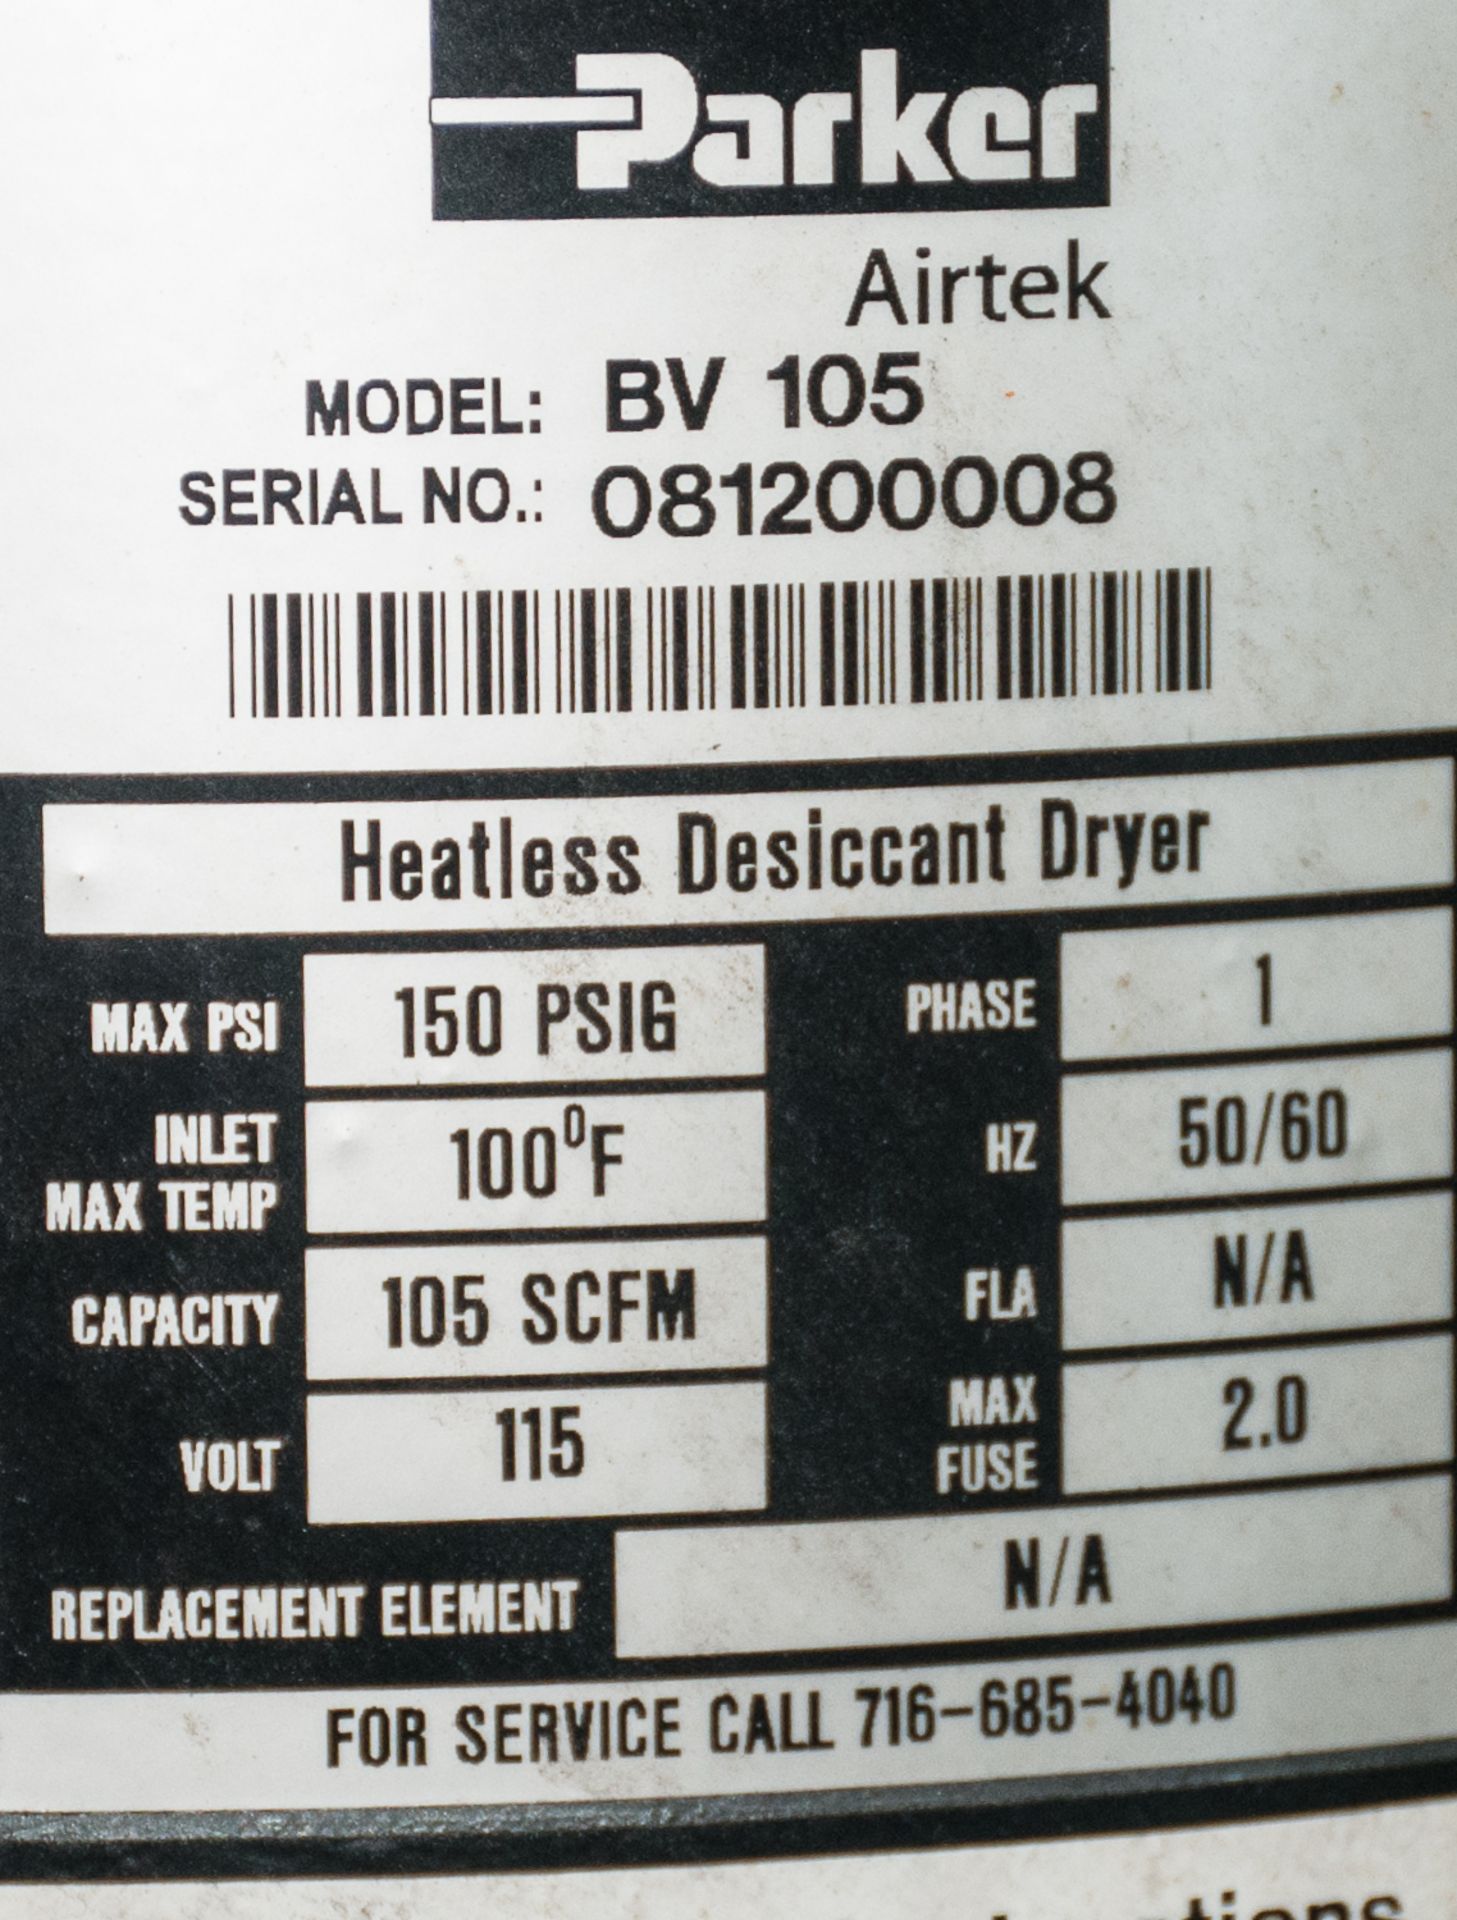 AirTEK Air Dryer Mdl. BV105, s/n 081200008, Heatless Dessicant Dryer, Cap 105 SCFM, 115v - Image 2 of 2